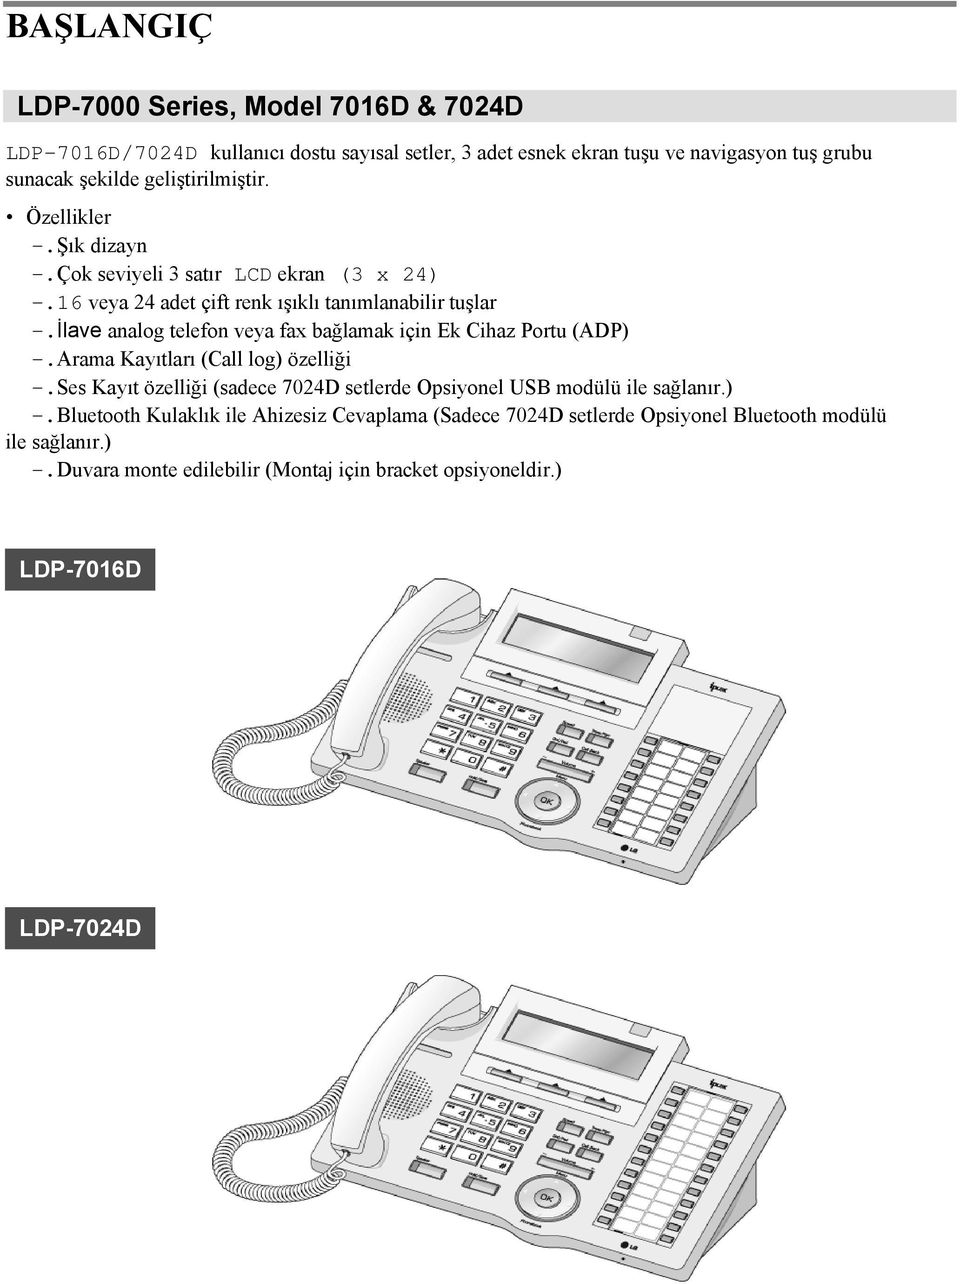 İlave analog telefon veya fax bağlamak için Ek Cihaz Portu (ADP) -.Arama Kayıtları (Call log) özelliği -.